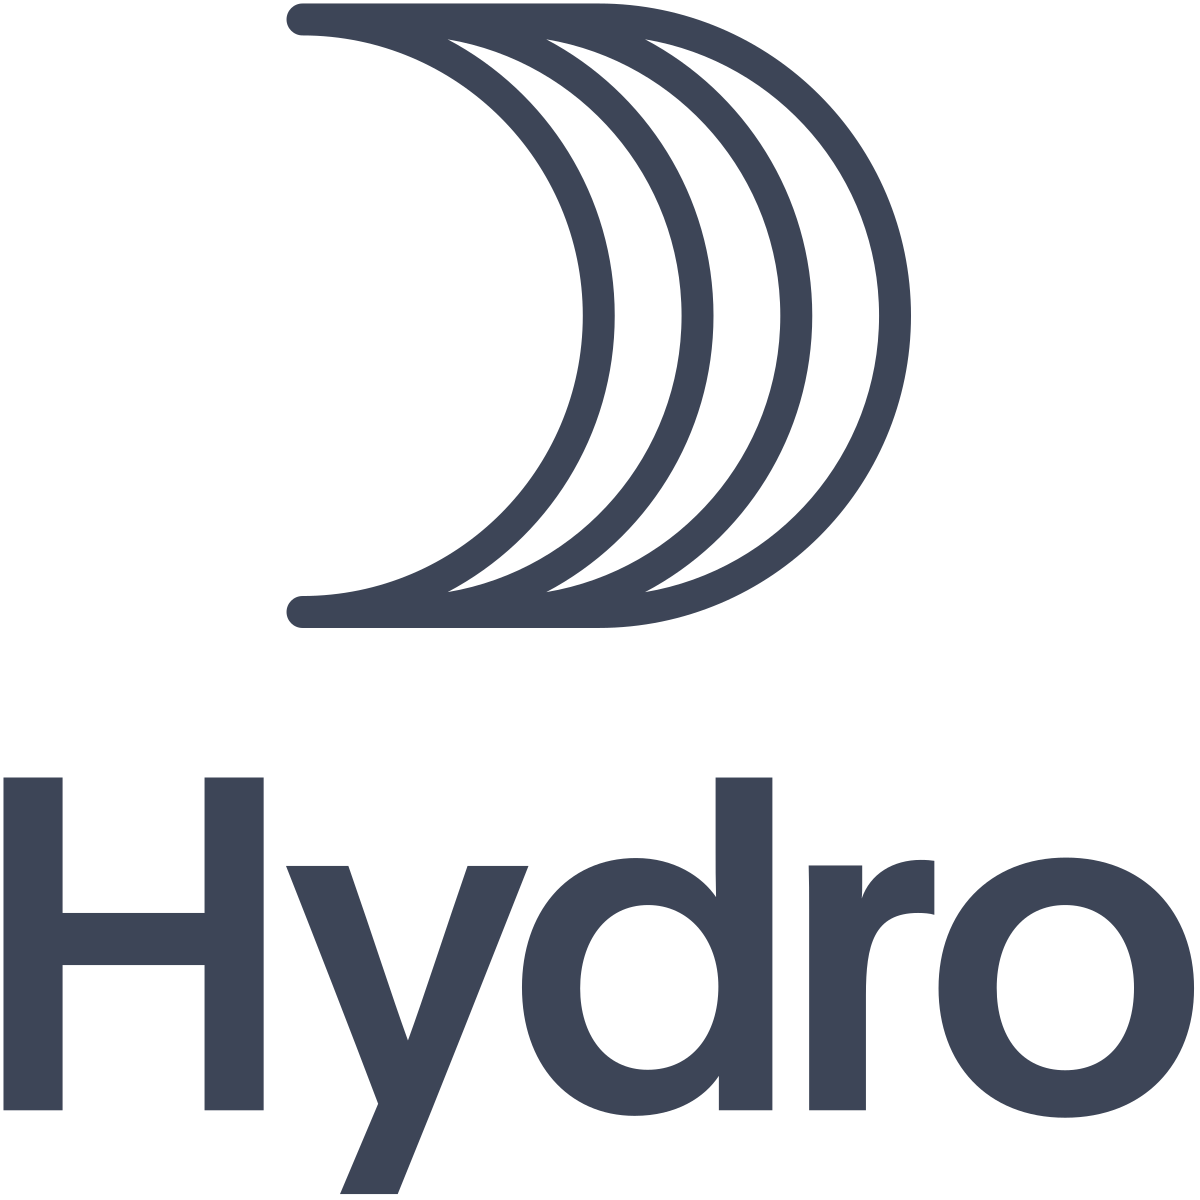 Hydro Aluminum